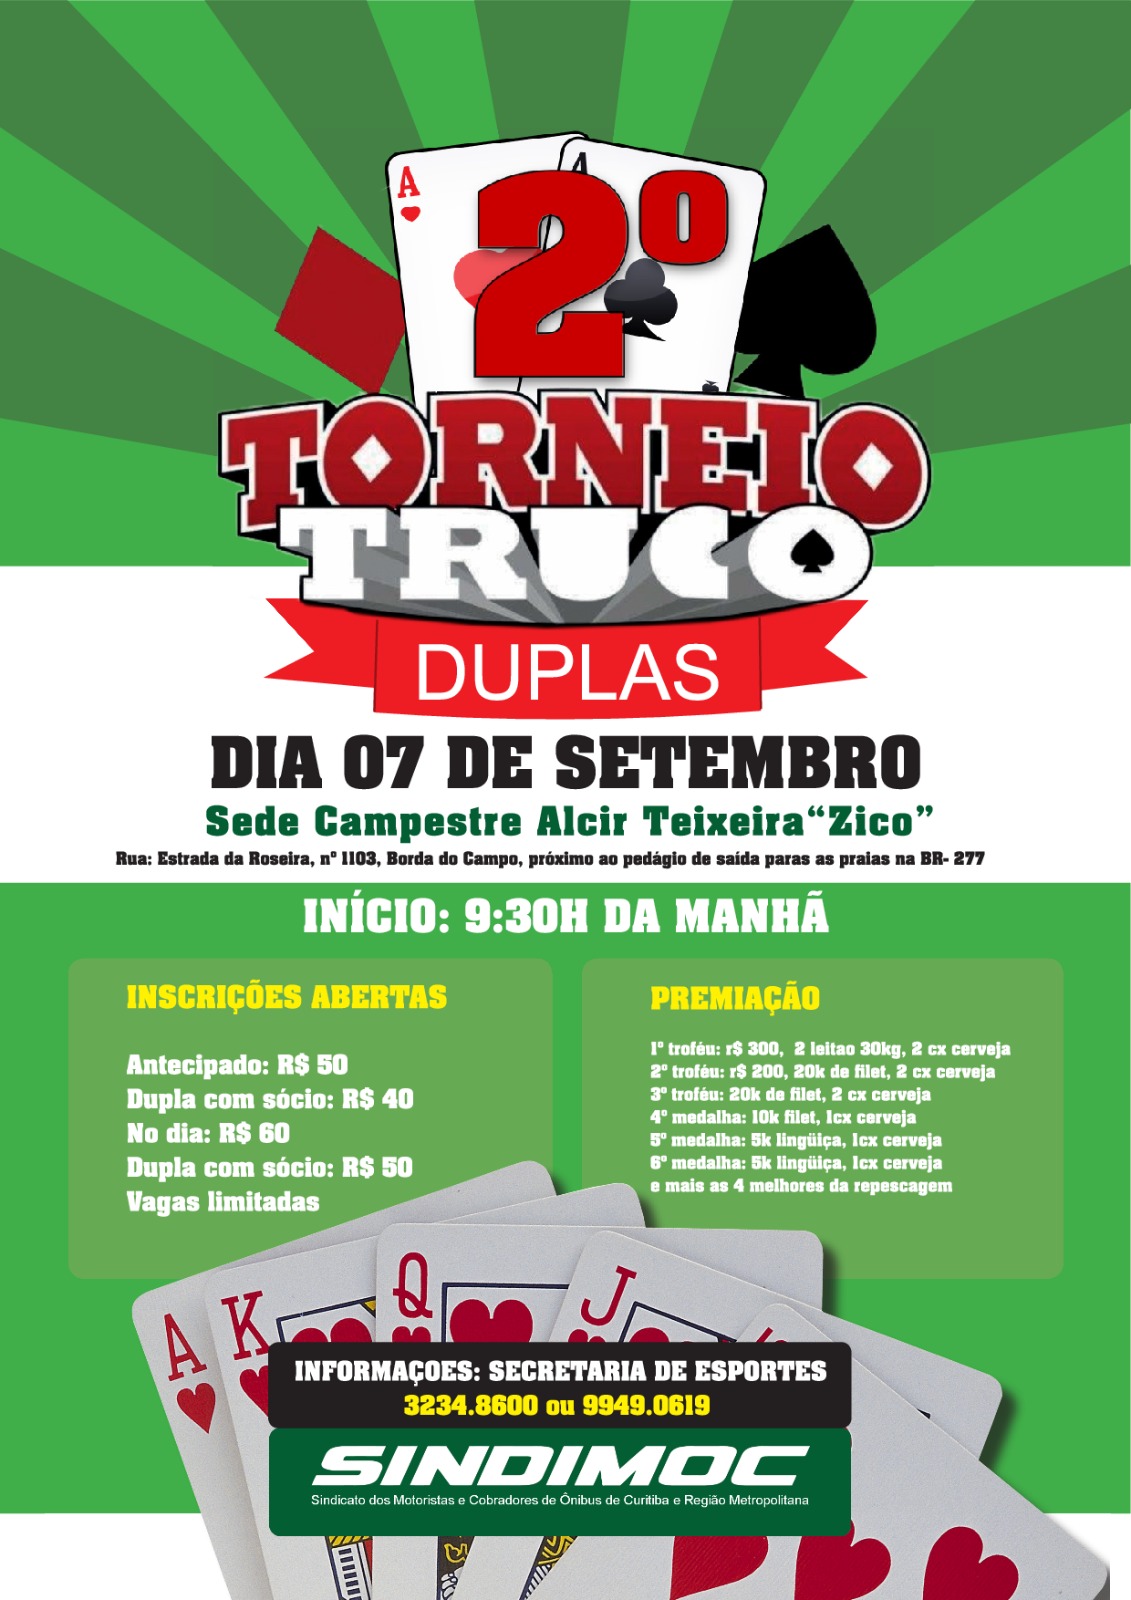 Torneio de Truco em Duplas tem nova data: 26 de novembro. Inscreva-se!